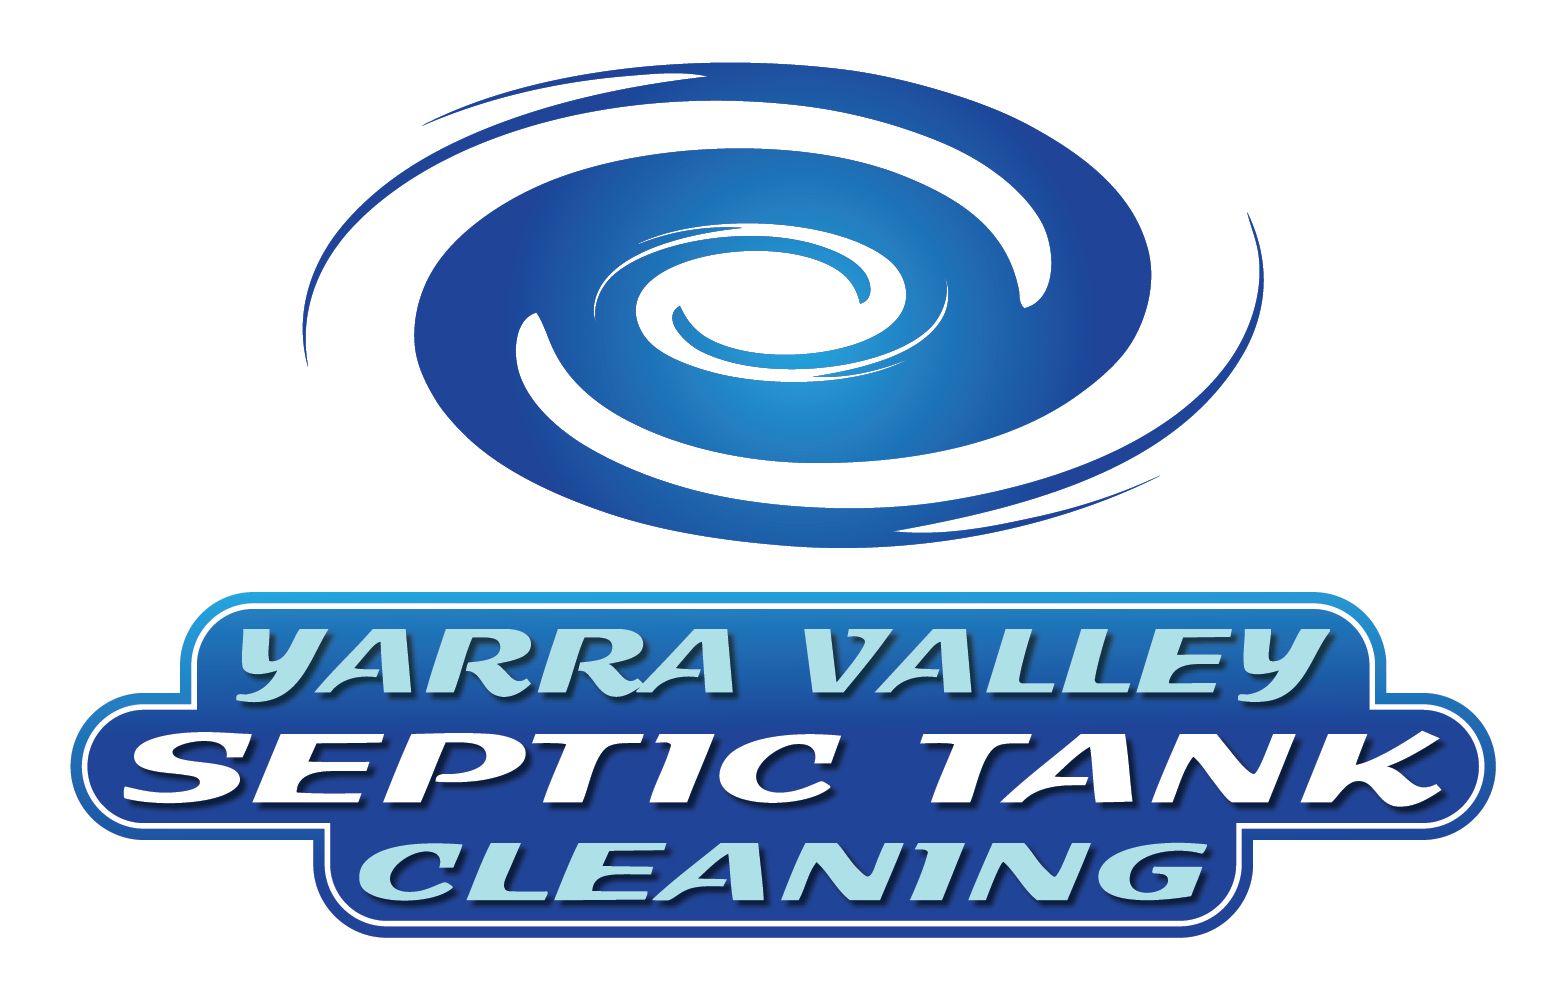 Yarra Valley Septics